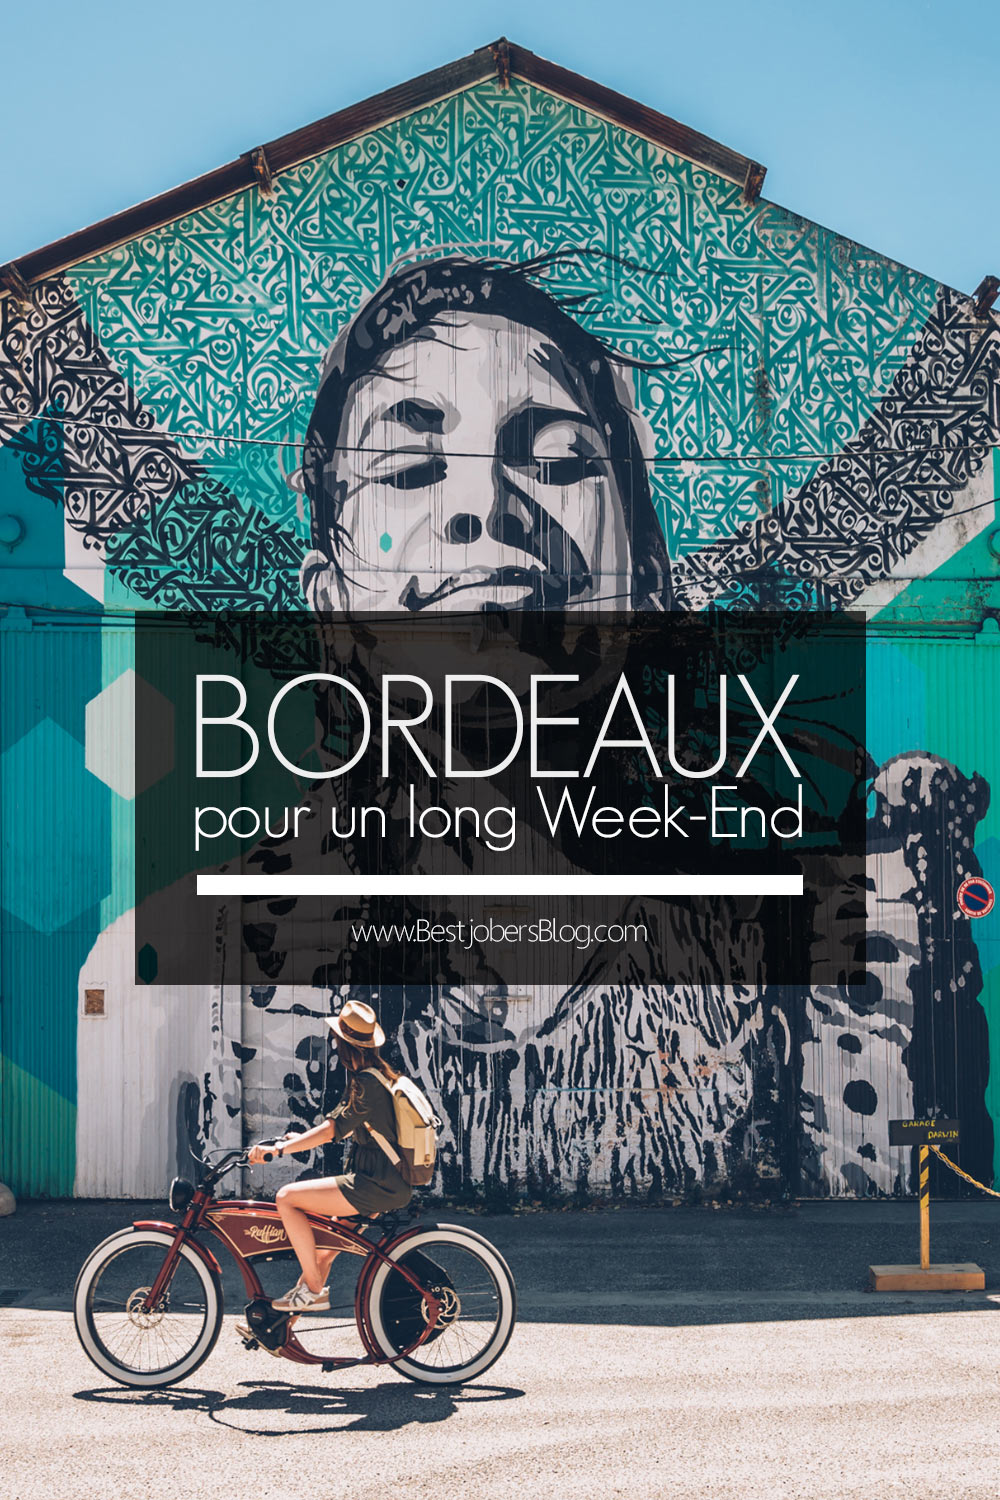 Bordeaux, Que faire en un Week-end?